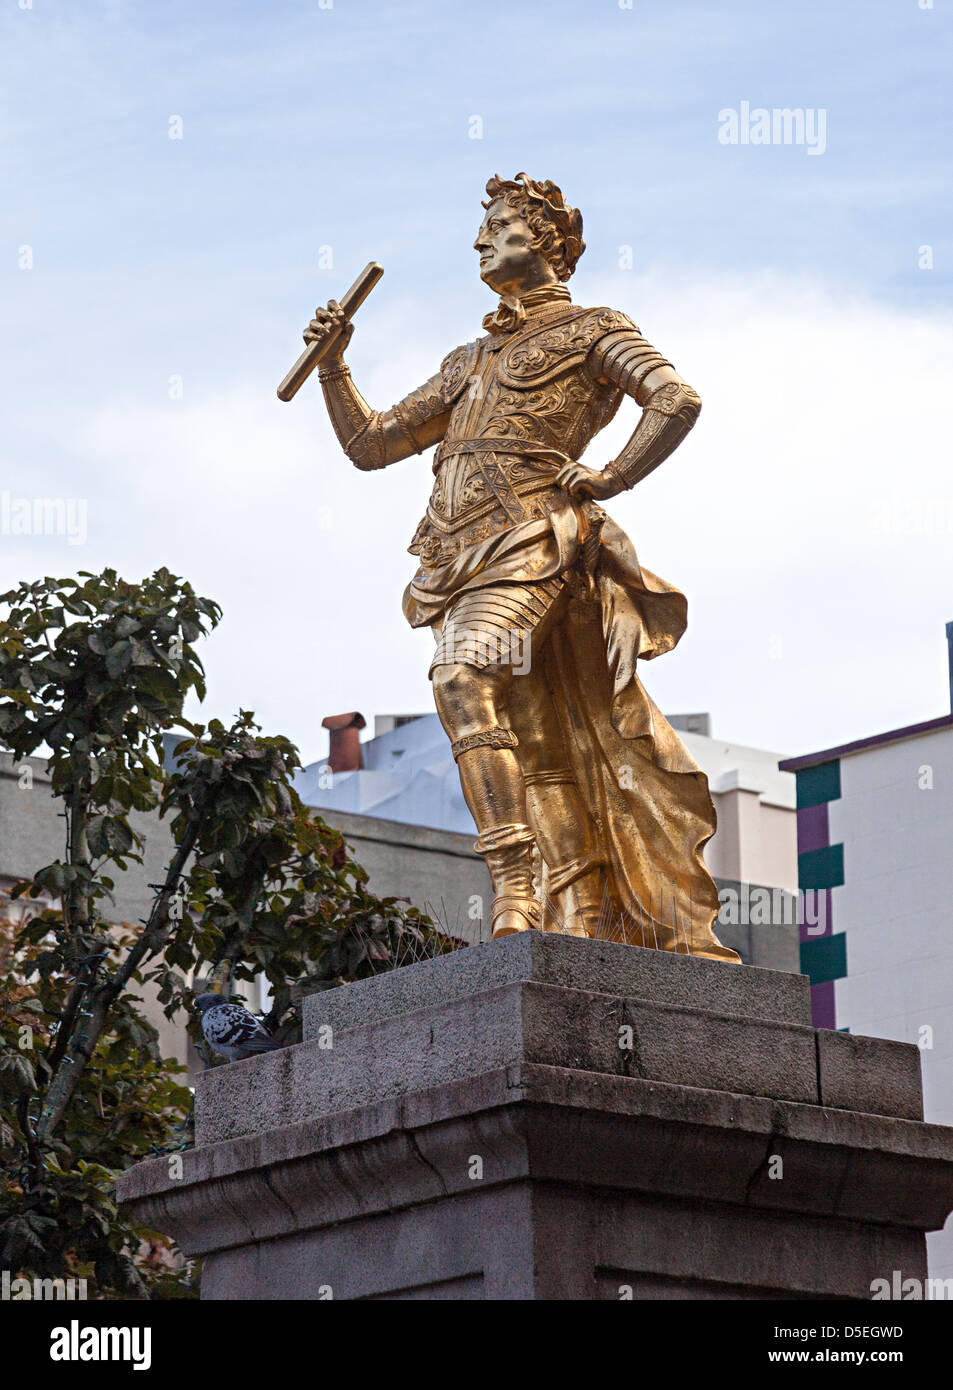 Estatua del rey Jorge II en el Royal Plaza St Helier, el origen de todas las distancias se miden en Jersey, Islas del Canal, REINO UNIDO Foto de stock